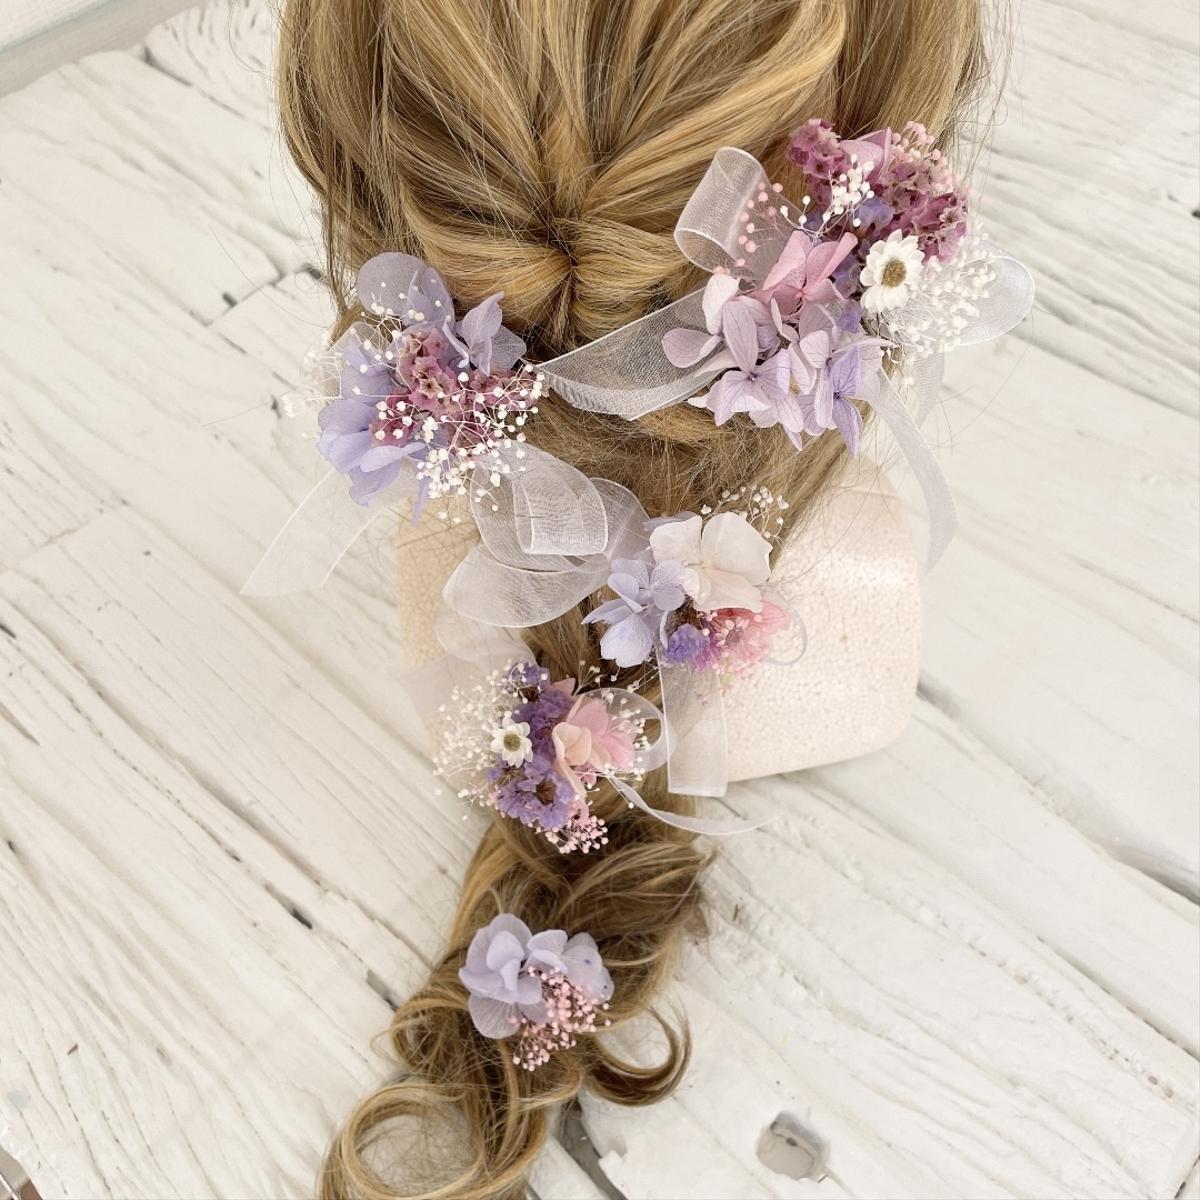 ブーケの様な髪飾り ヘッドドレス BIGリボン パープル - rehda.com